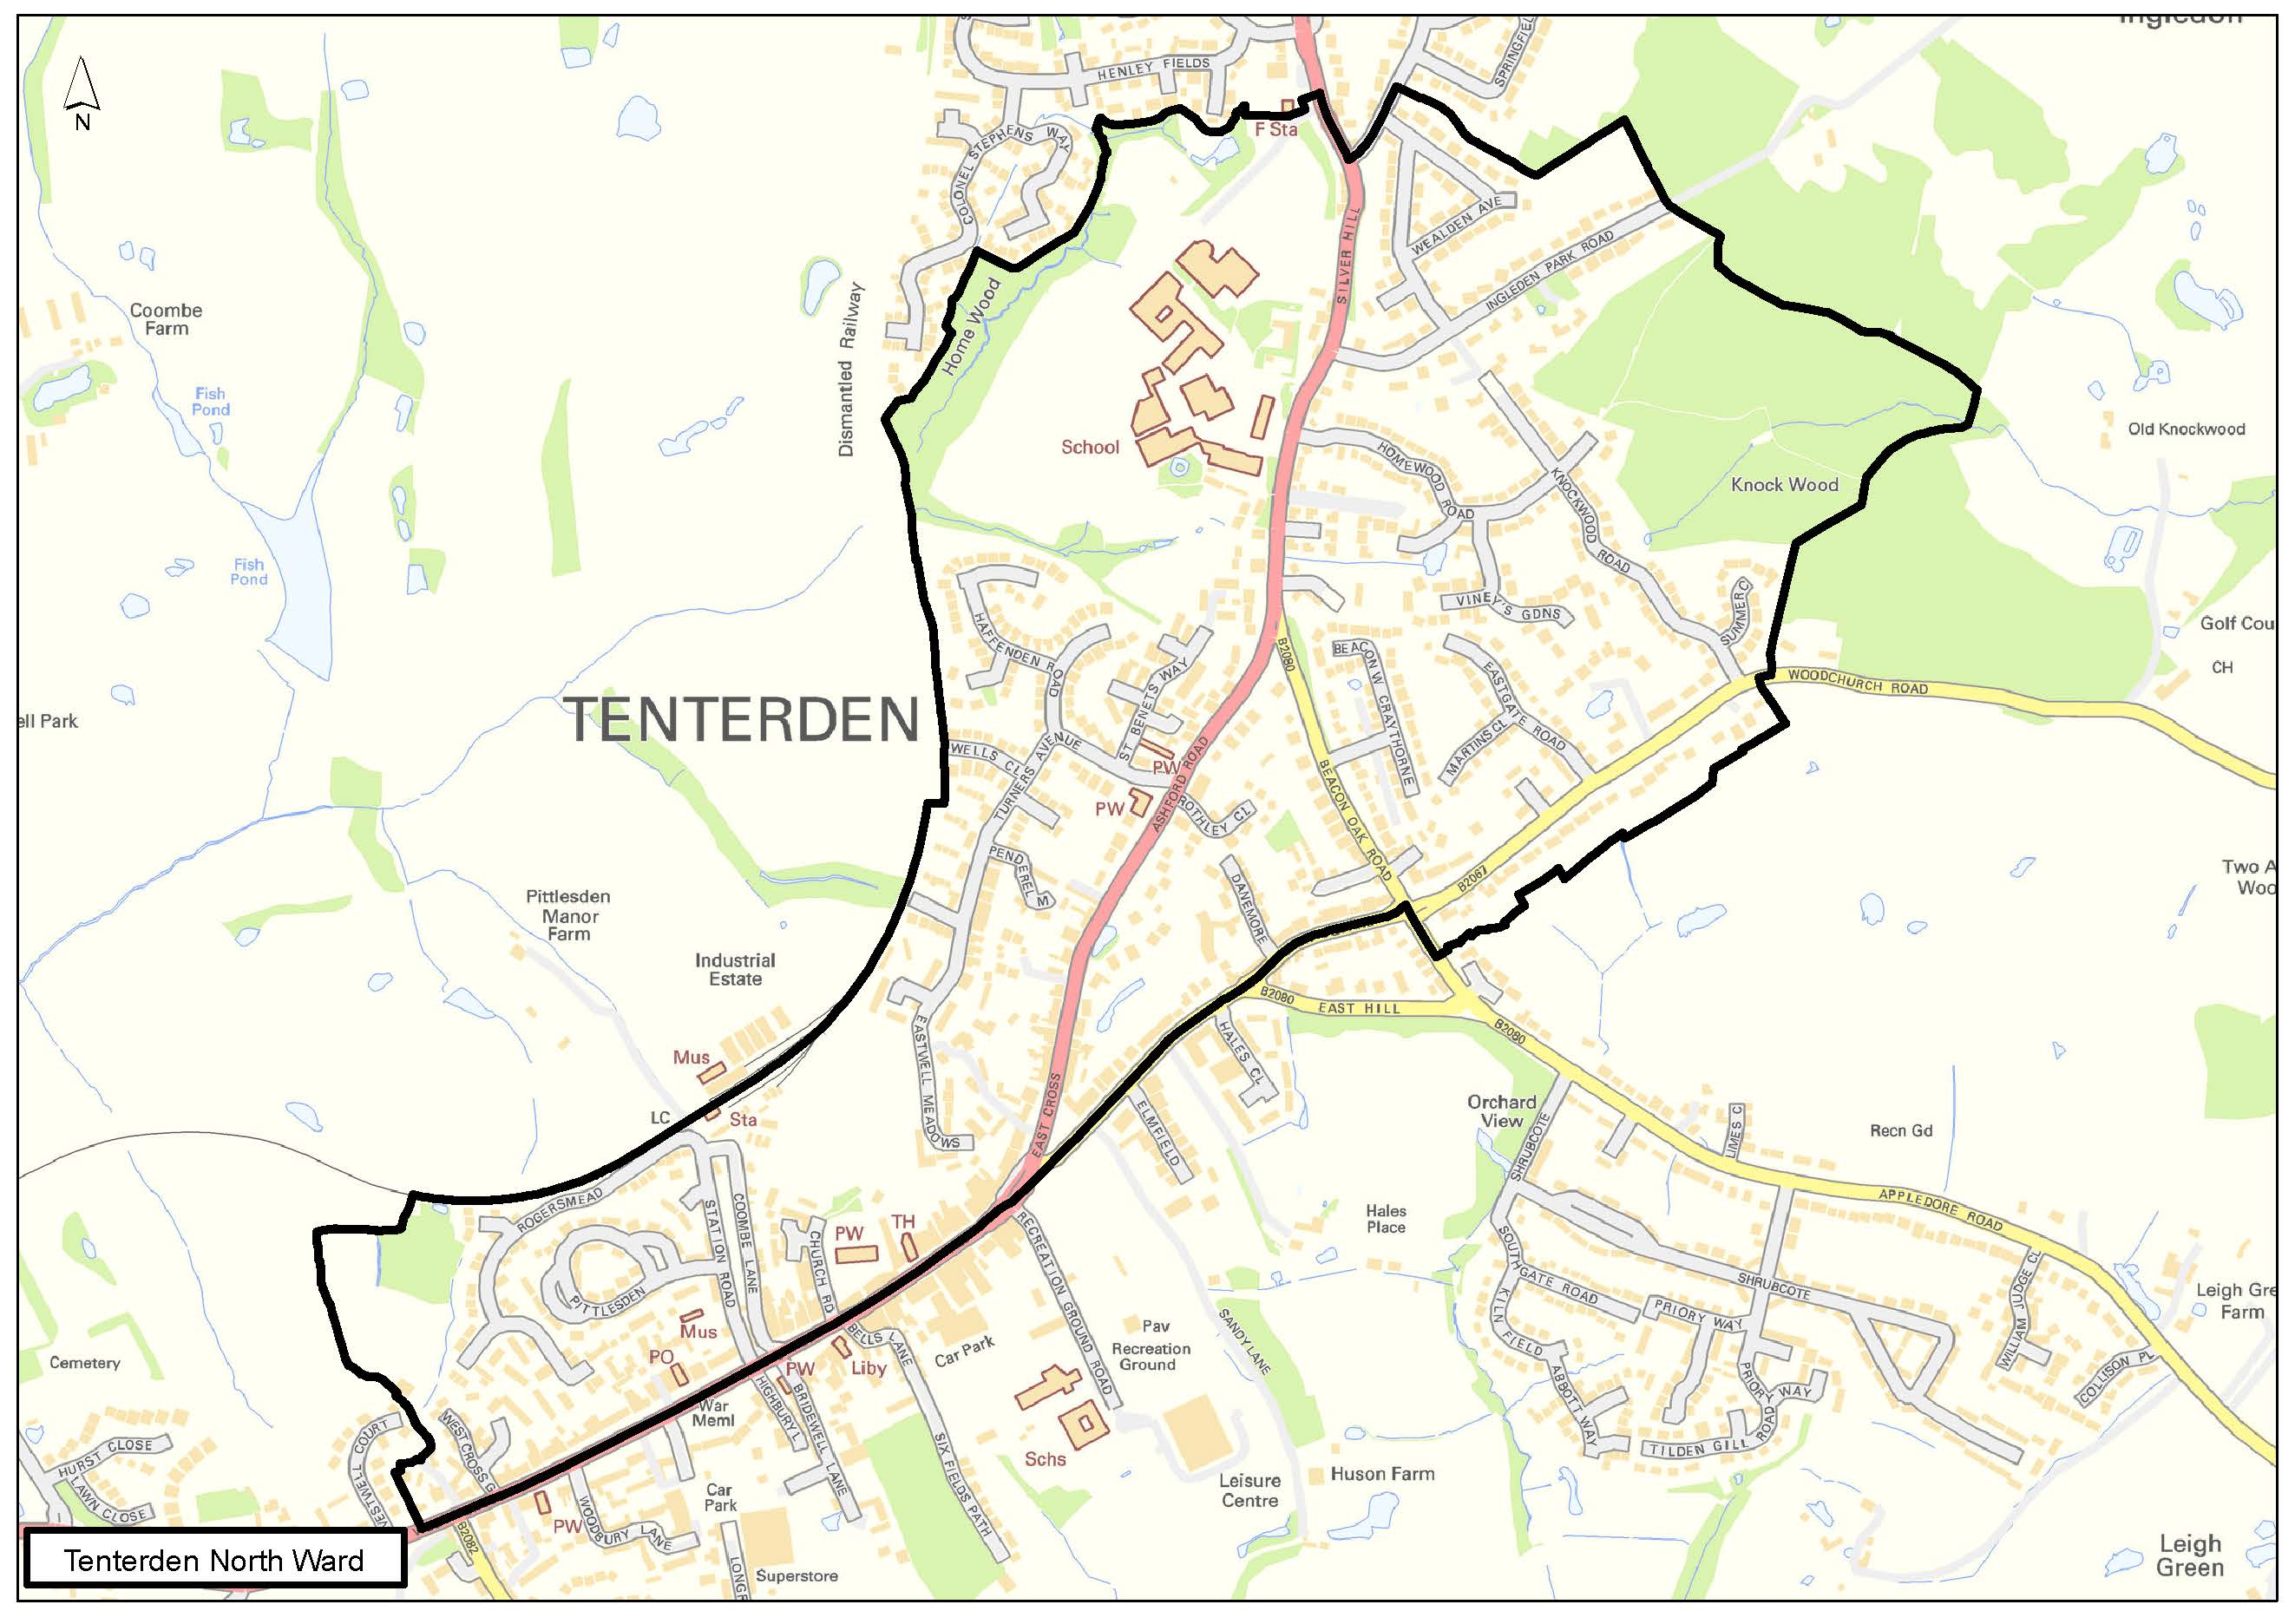 Tenterden North Ward